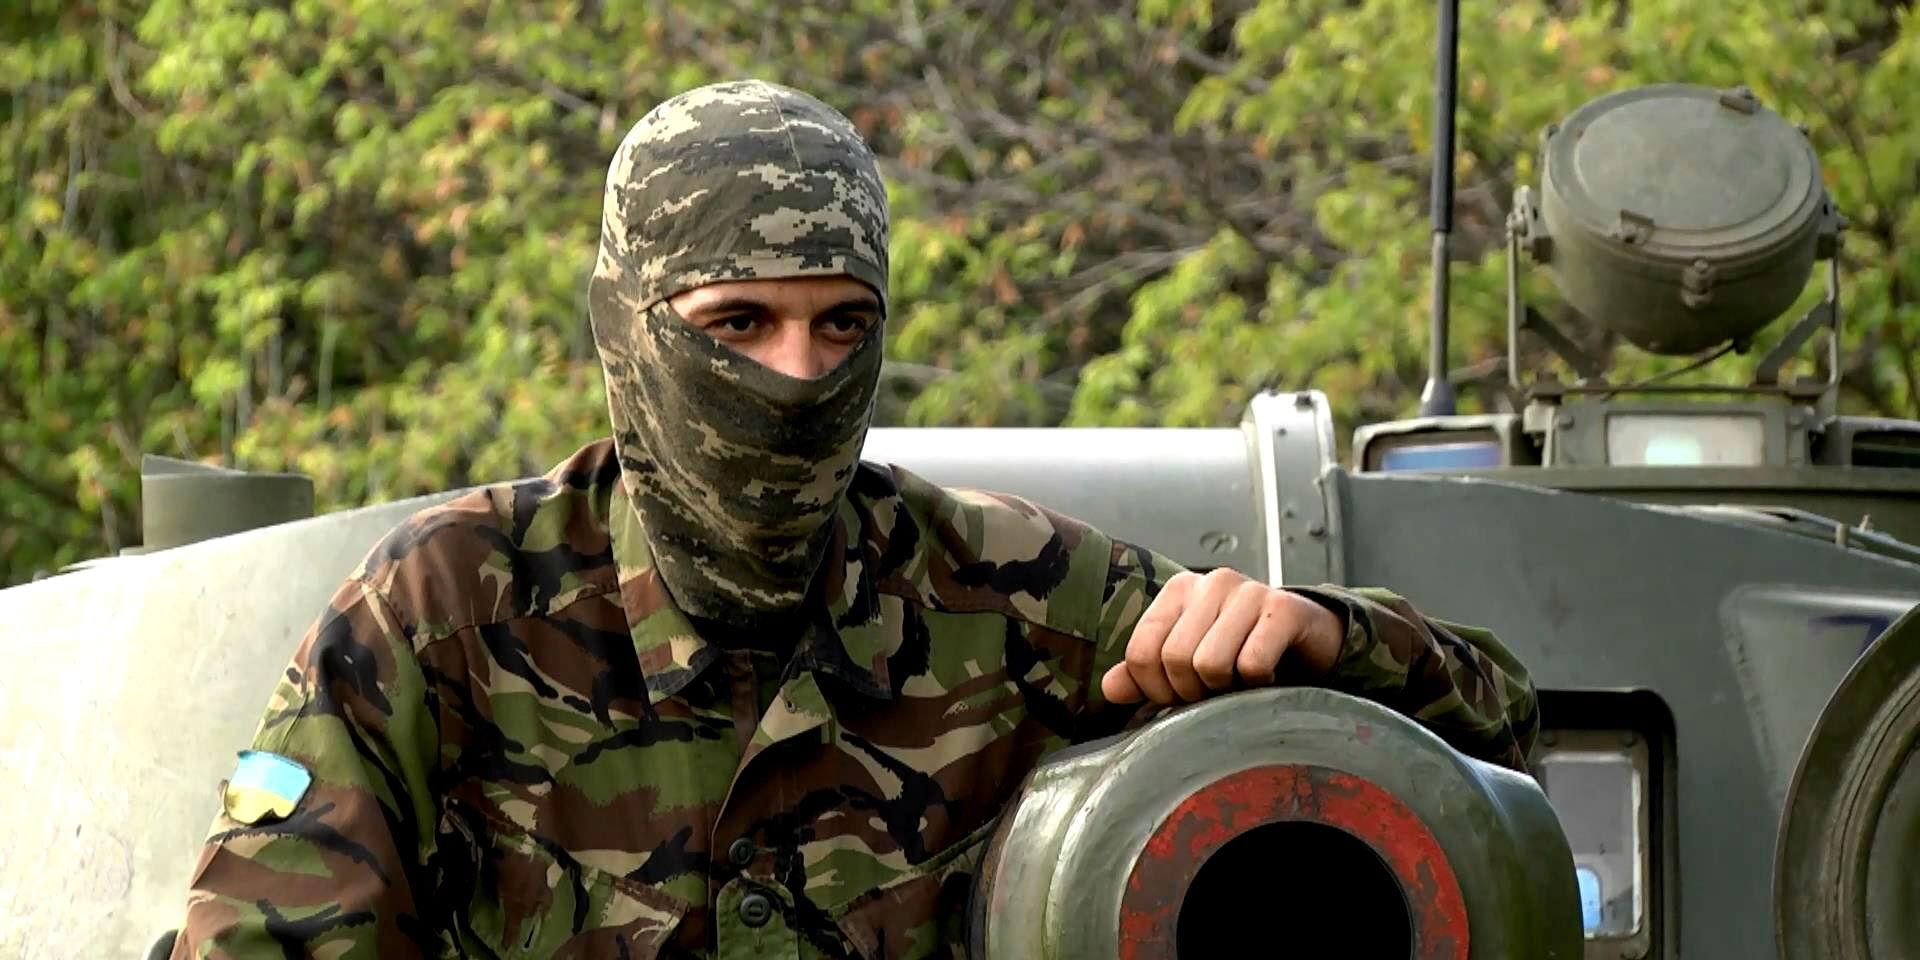 Наймолодший комбат України, за якого терористи готові платити сотні тисяч доларів